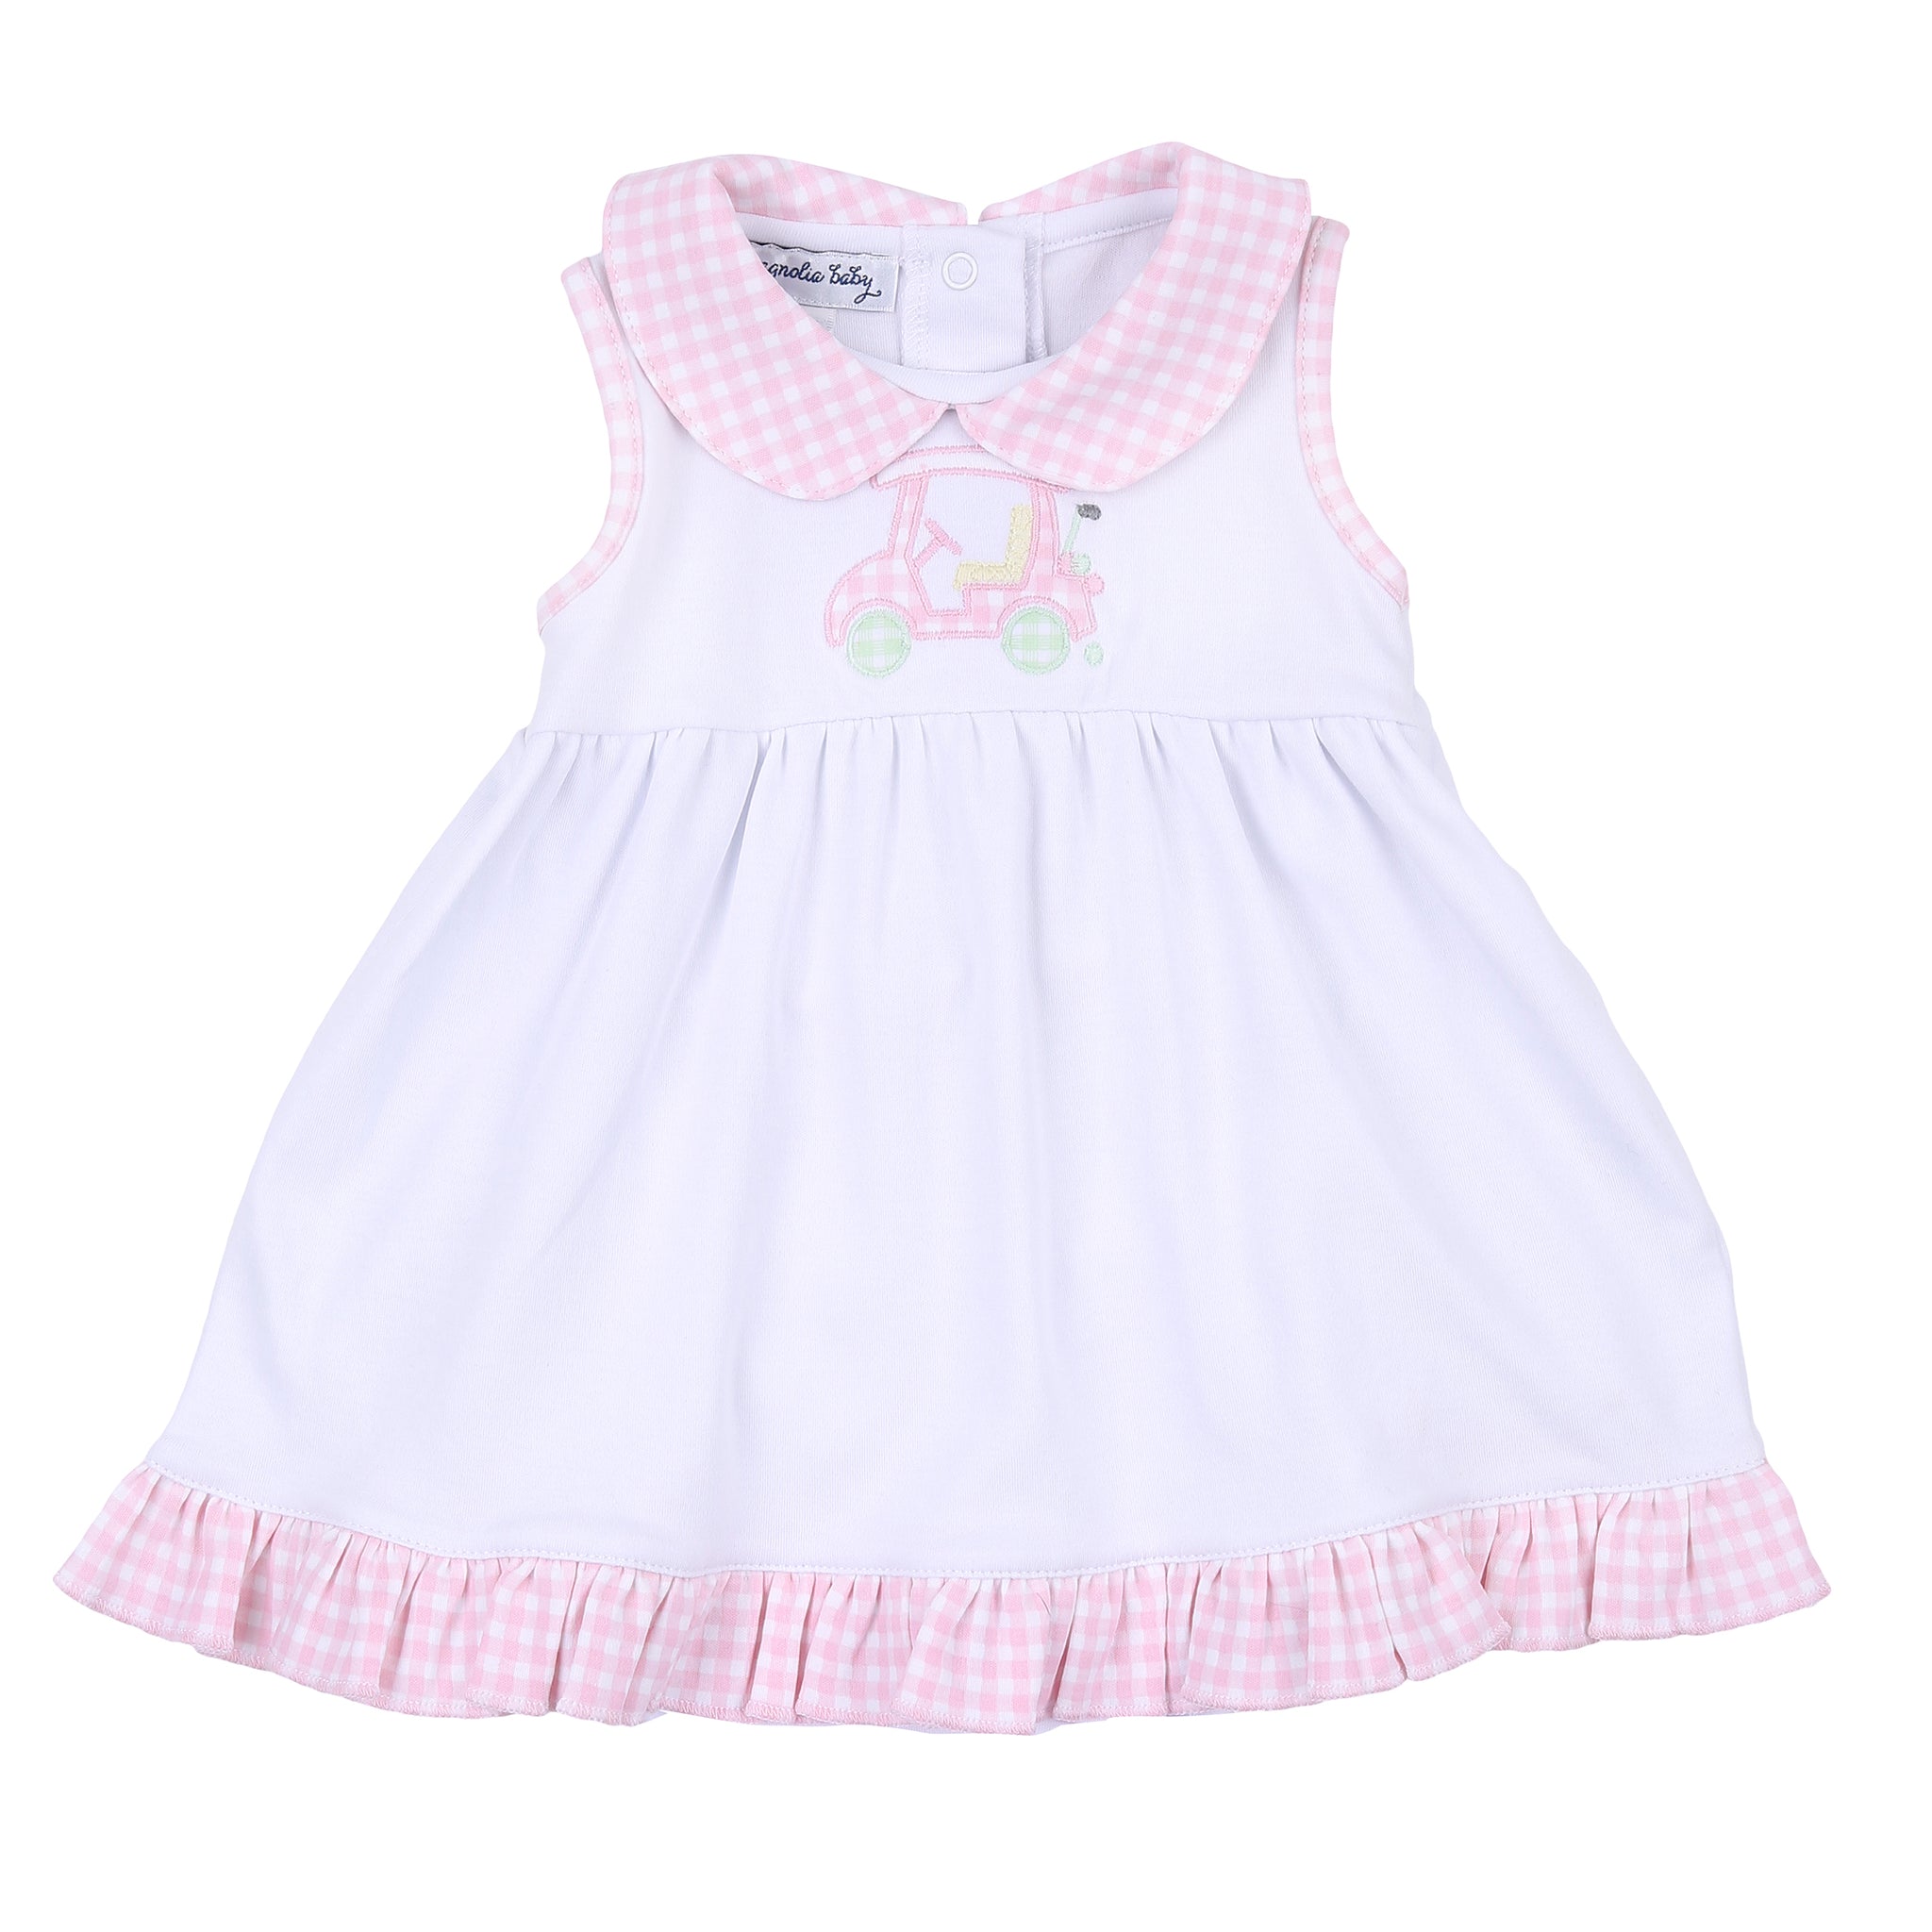 Little Caddie Applique Sleeveless Dress (18M)